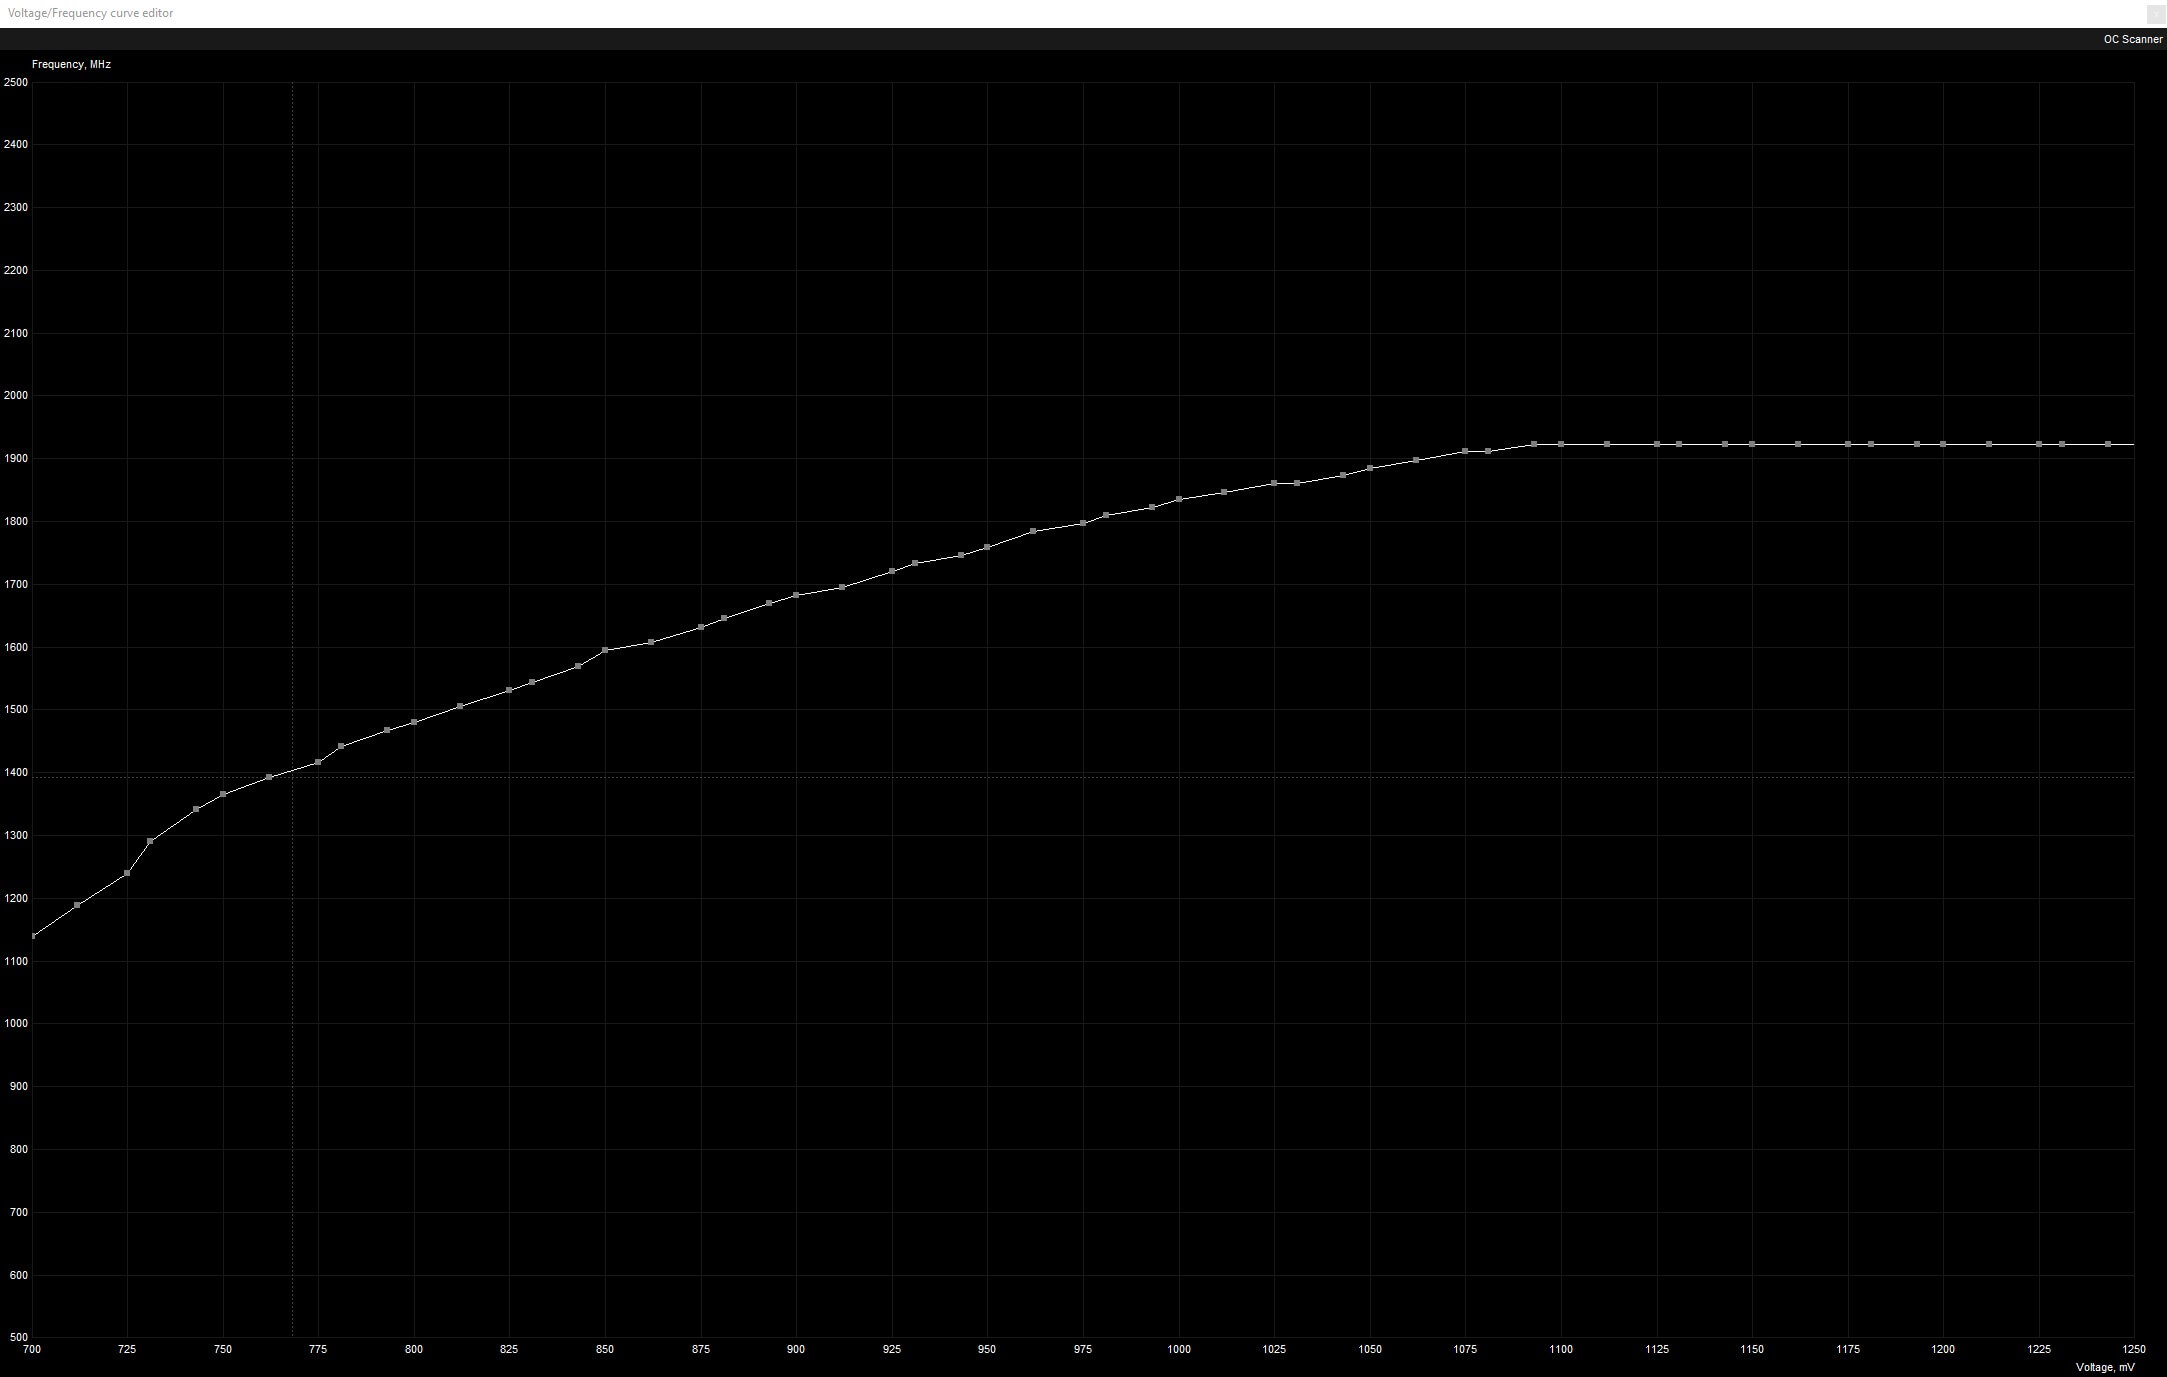 Default voltage curve for a 1080ti Strix